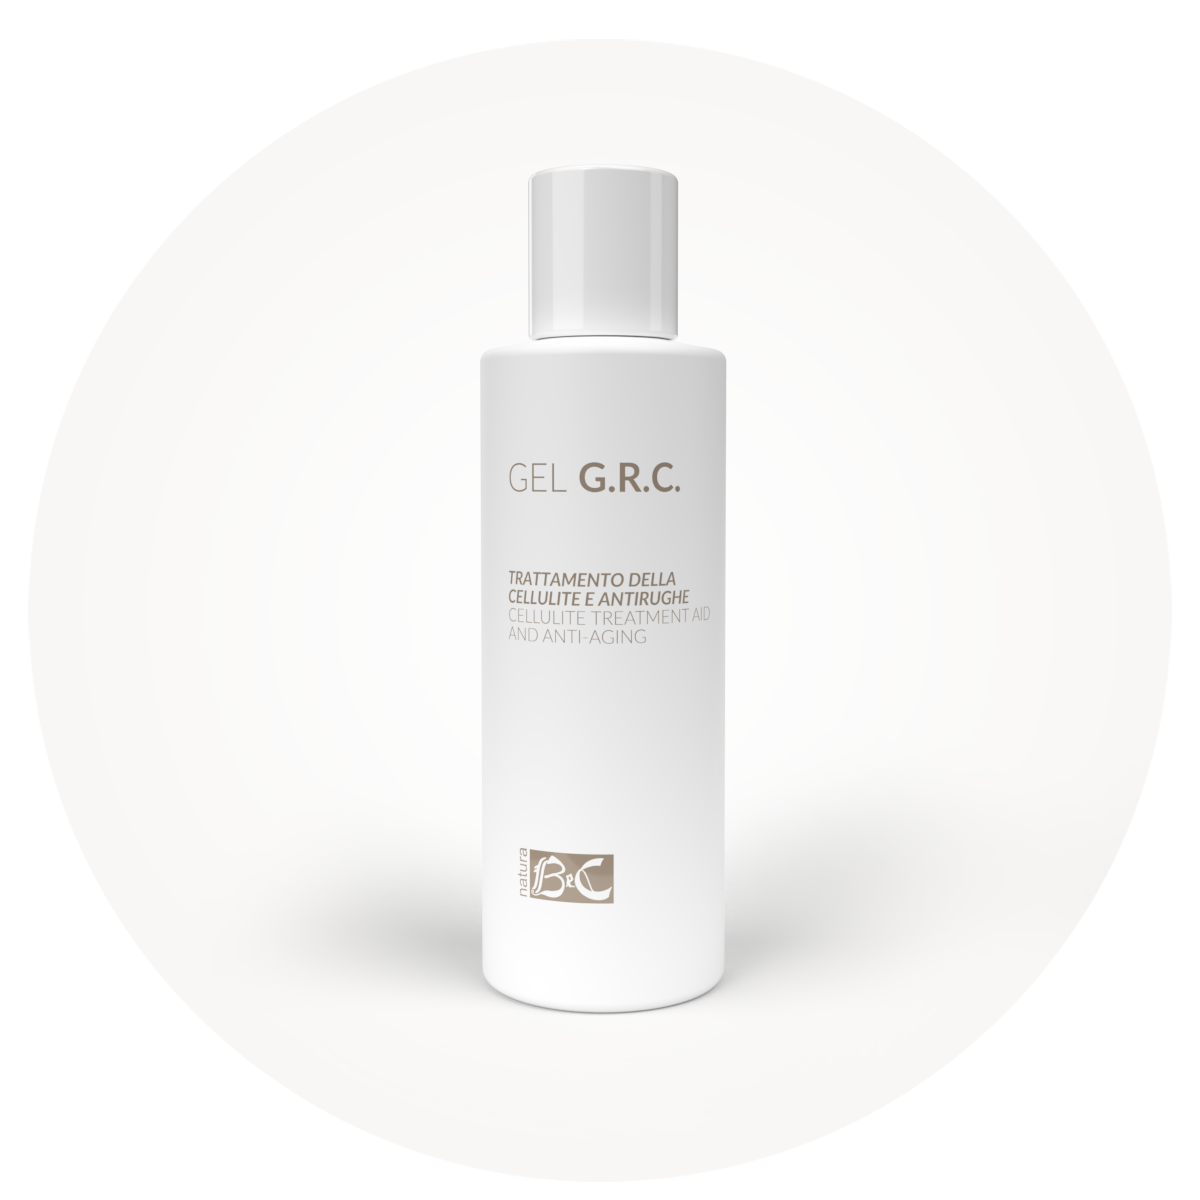 GEL G.R.C. 75 ml